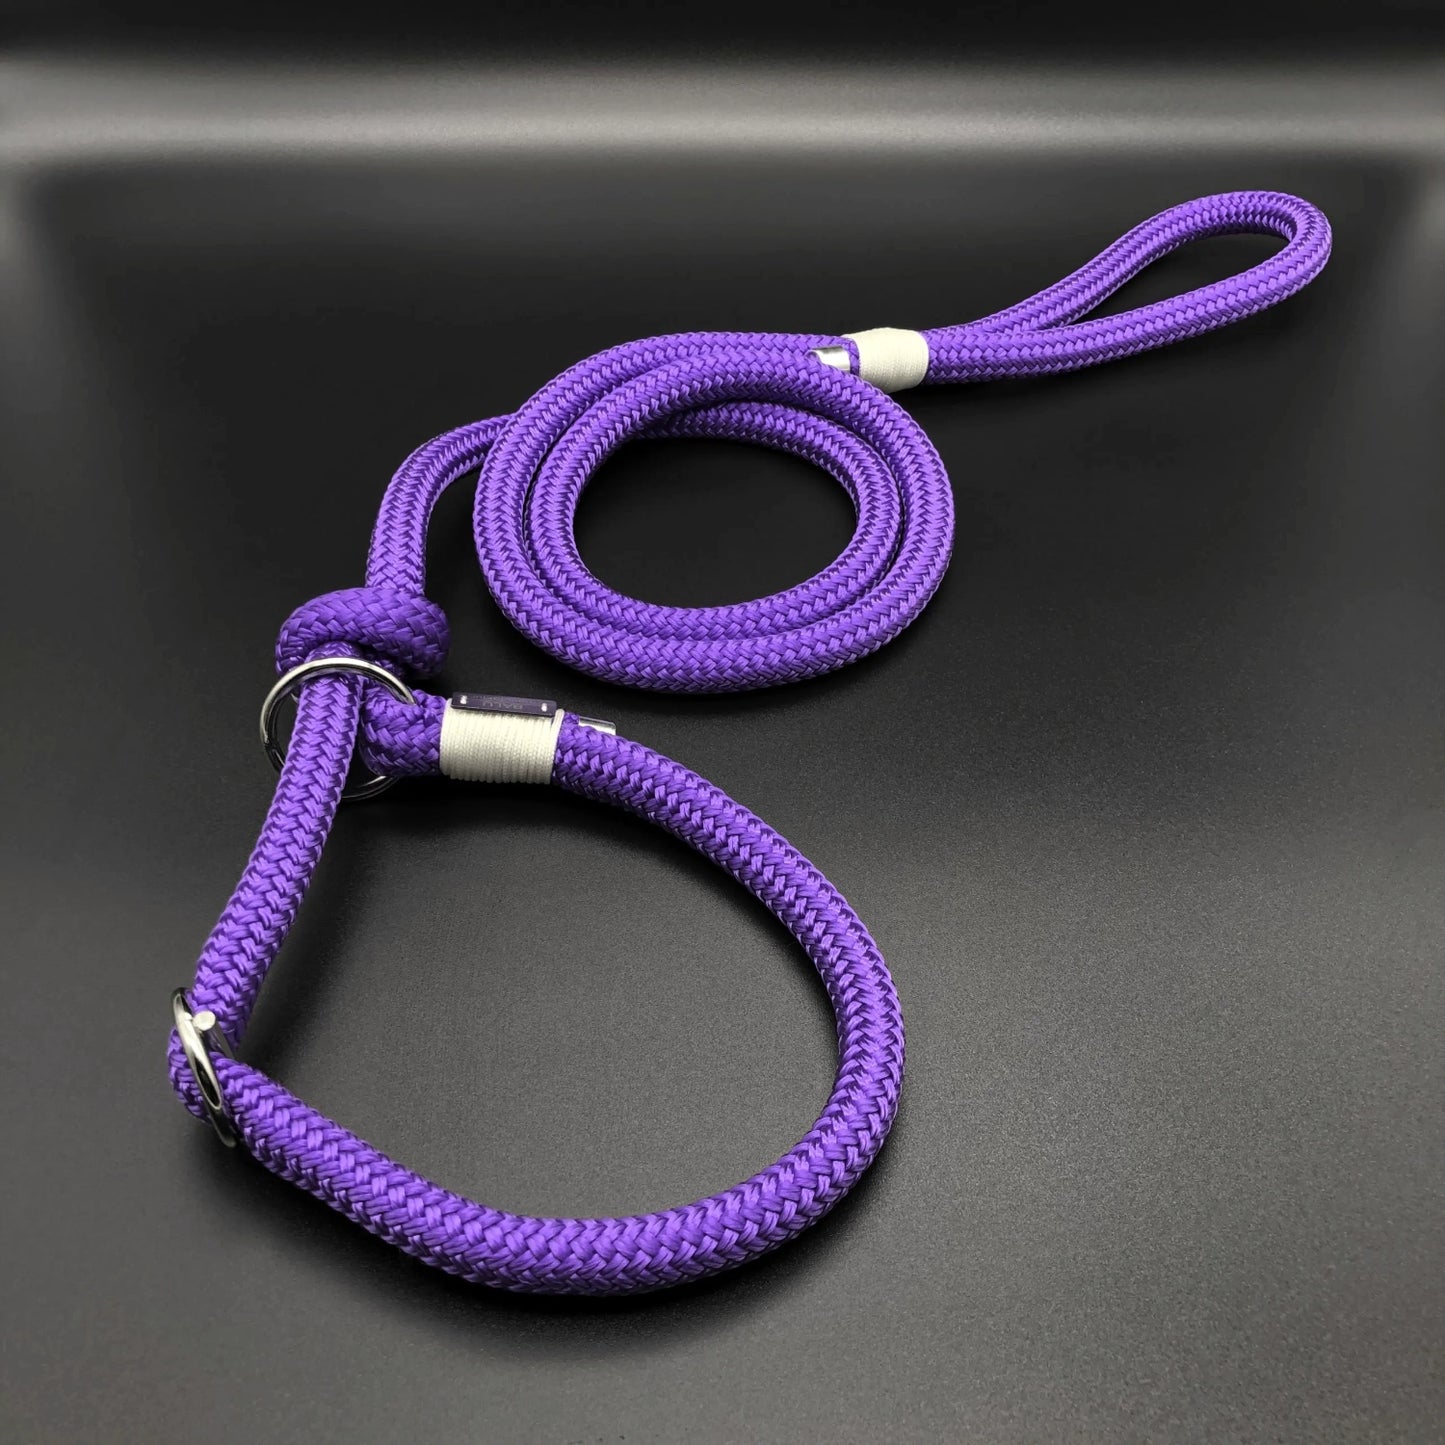 Violette Retrievereleine aus Seil in 1,2m länge und silbernen Metallelementen